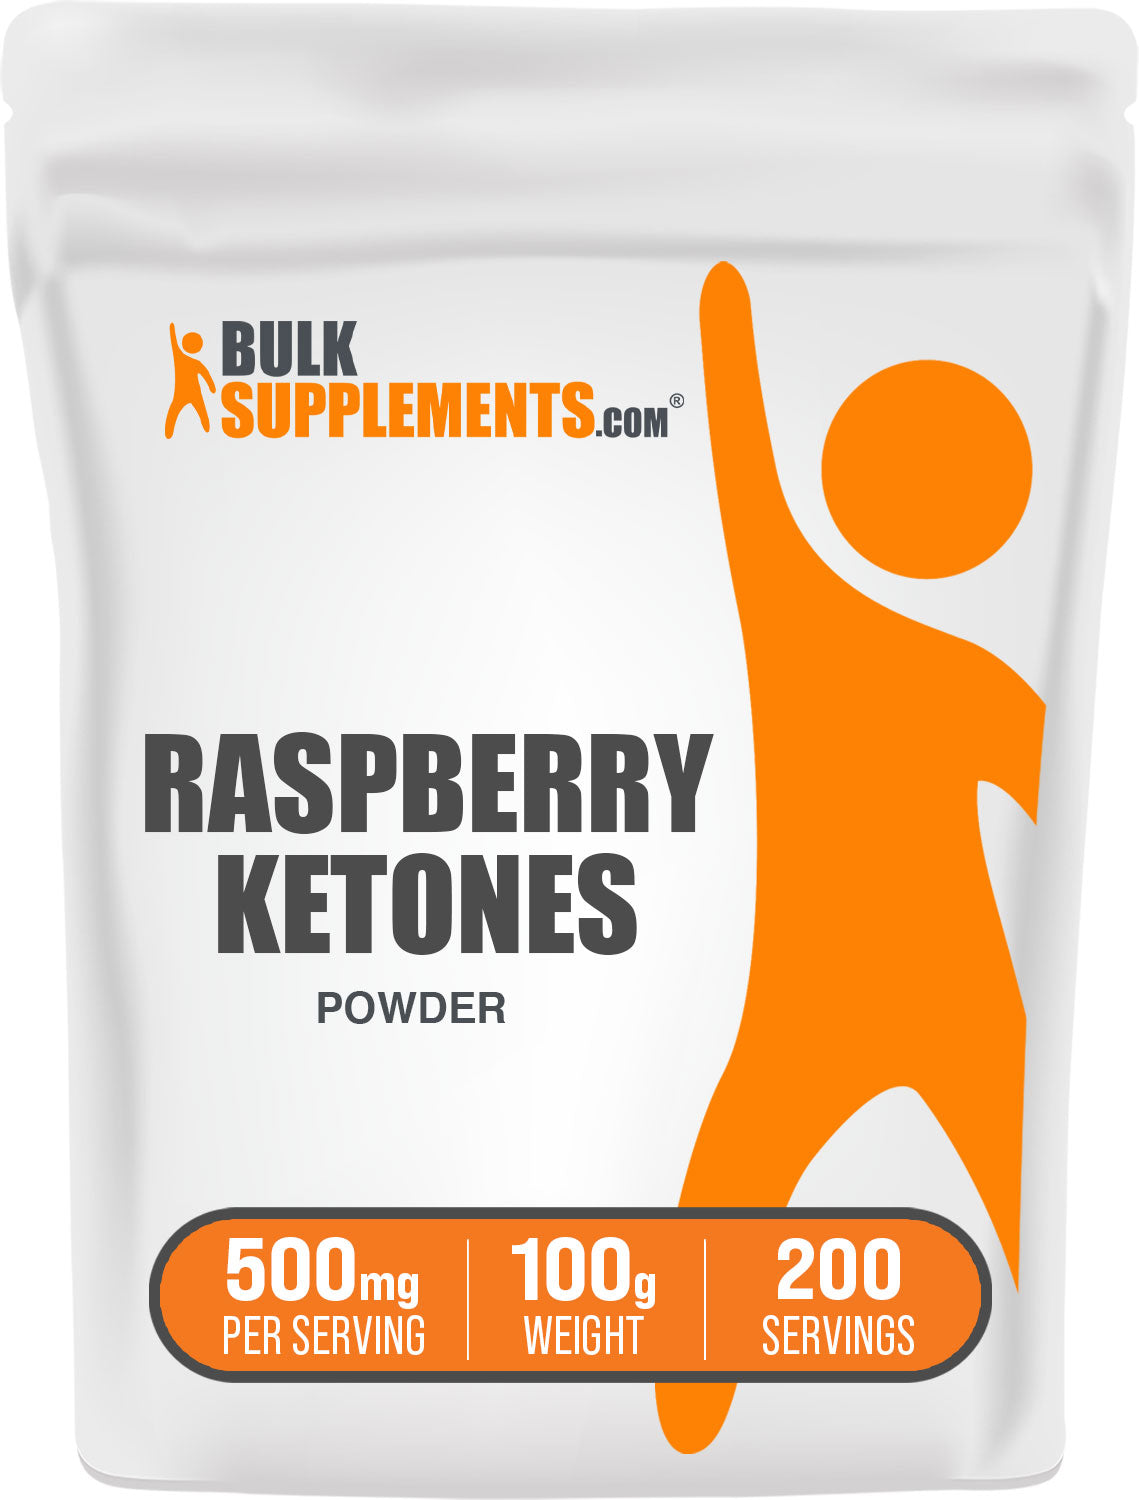 Raspberry Ketones 100g Bag